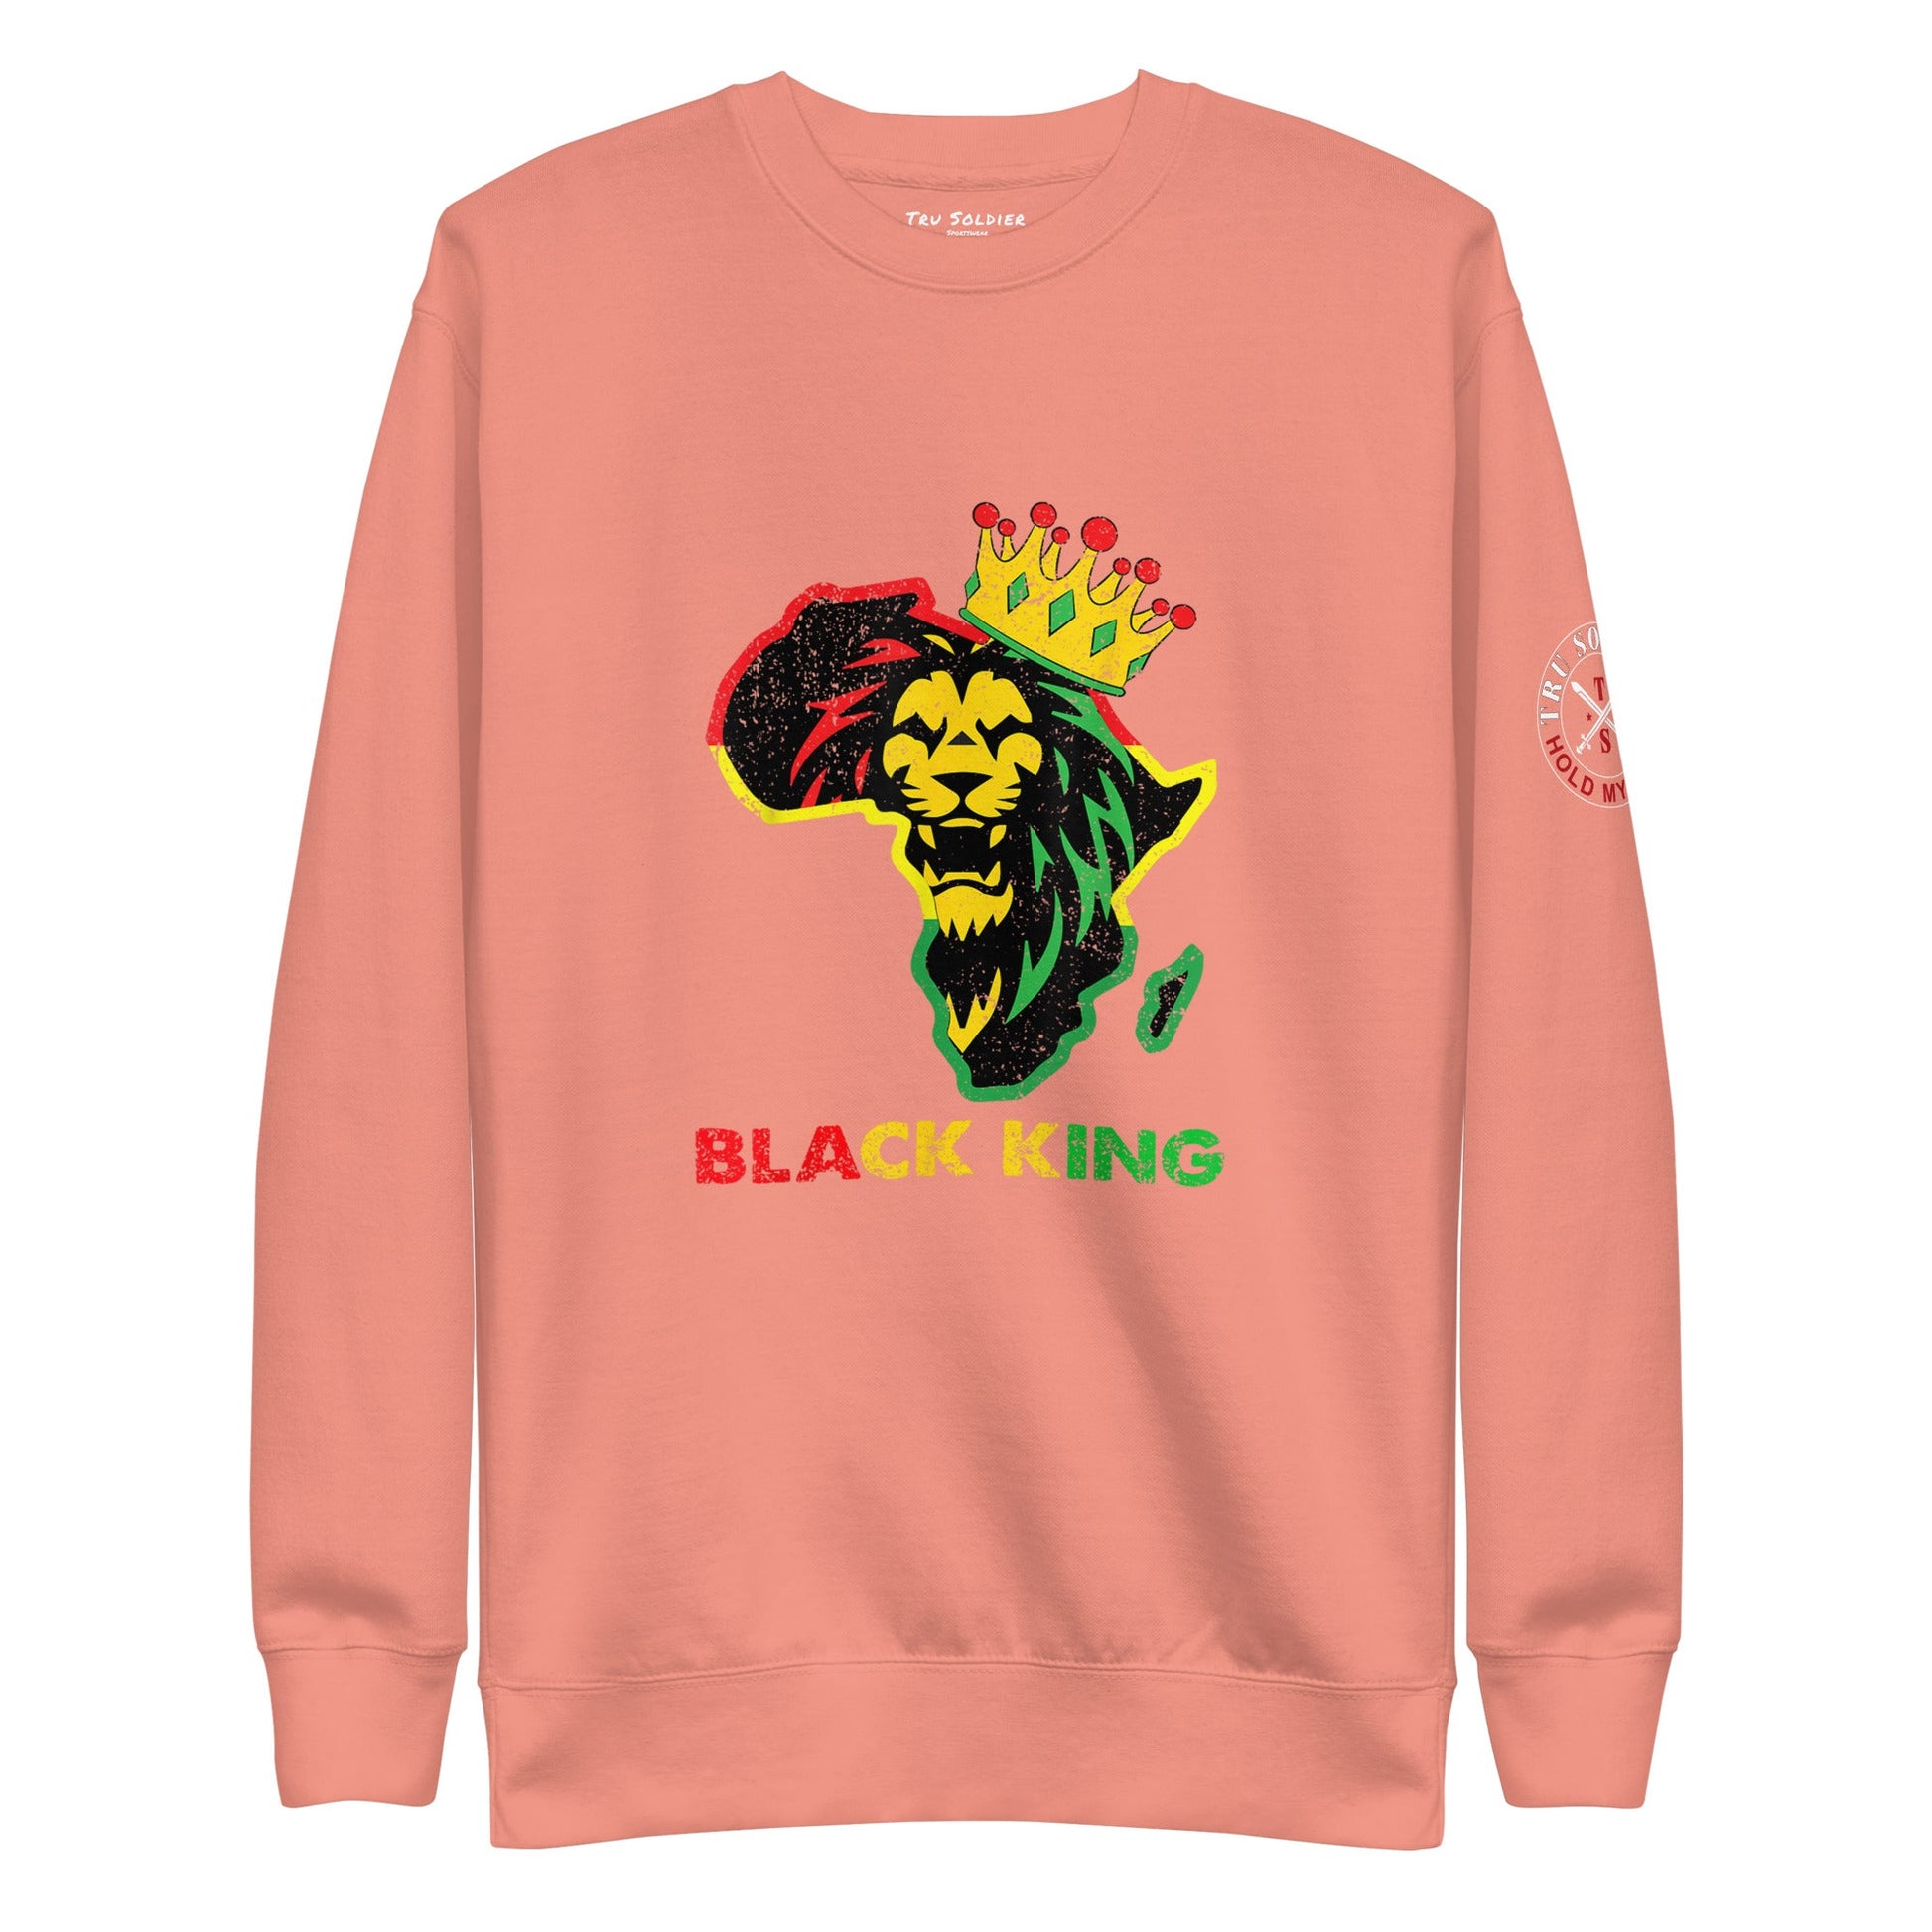 Tru Soldier Sportswear  Dusty Rose / S Black King Premium Sweatshirt